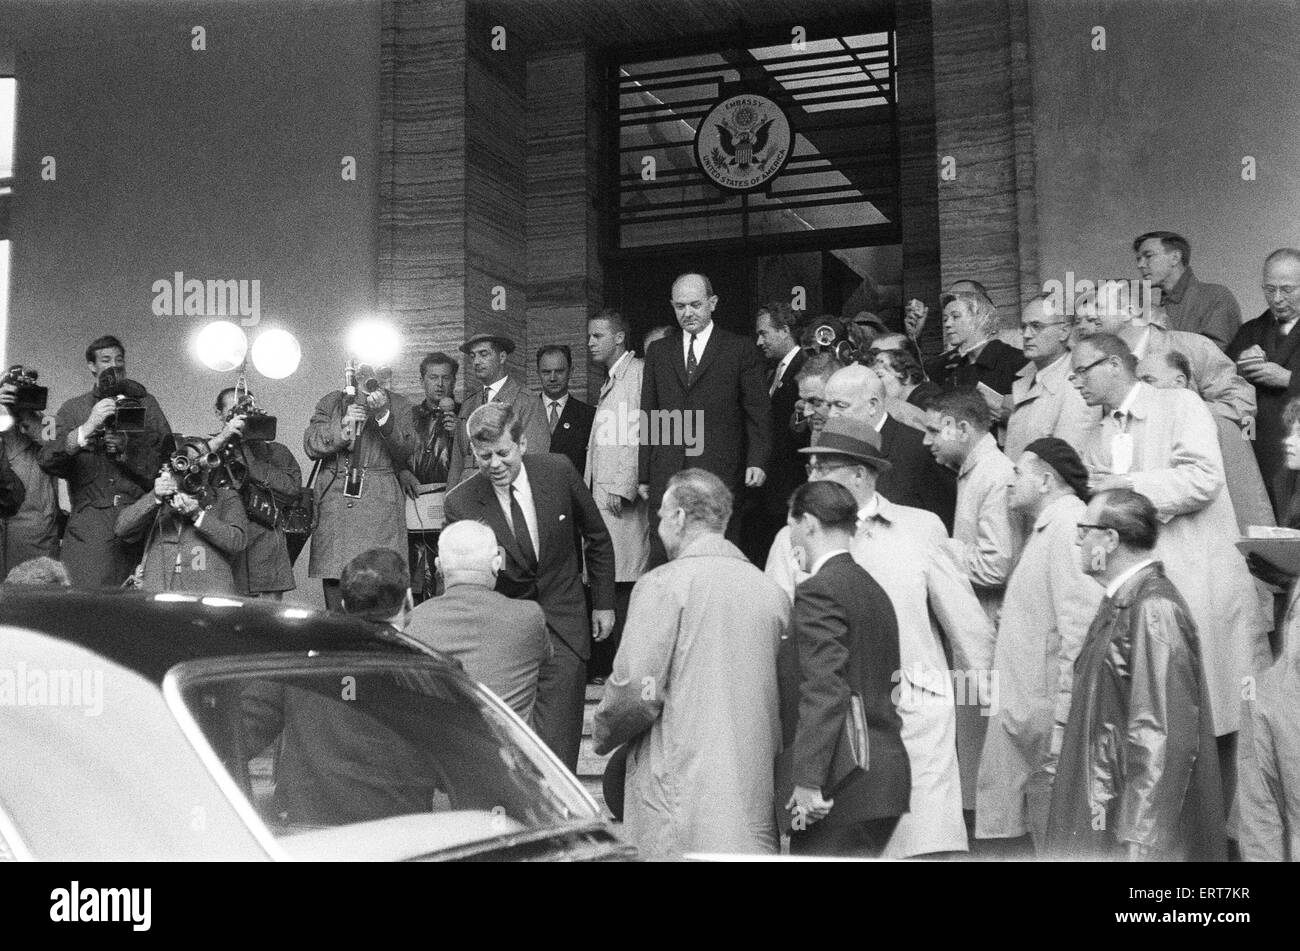 Der Besuch der amerikanische Präsident John f. Kennedy in Wien, Österreich für Gespräche mit sowjetischen Ministerpräsidenten Nikita Khrushchev.  Die beiden Männer treffen außerhalb der US-Botschaft.  3. Juni 1961. Stockfoto